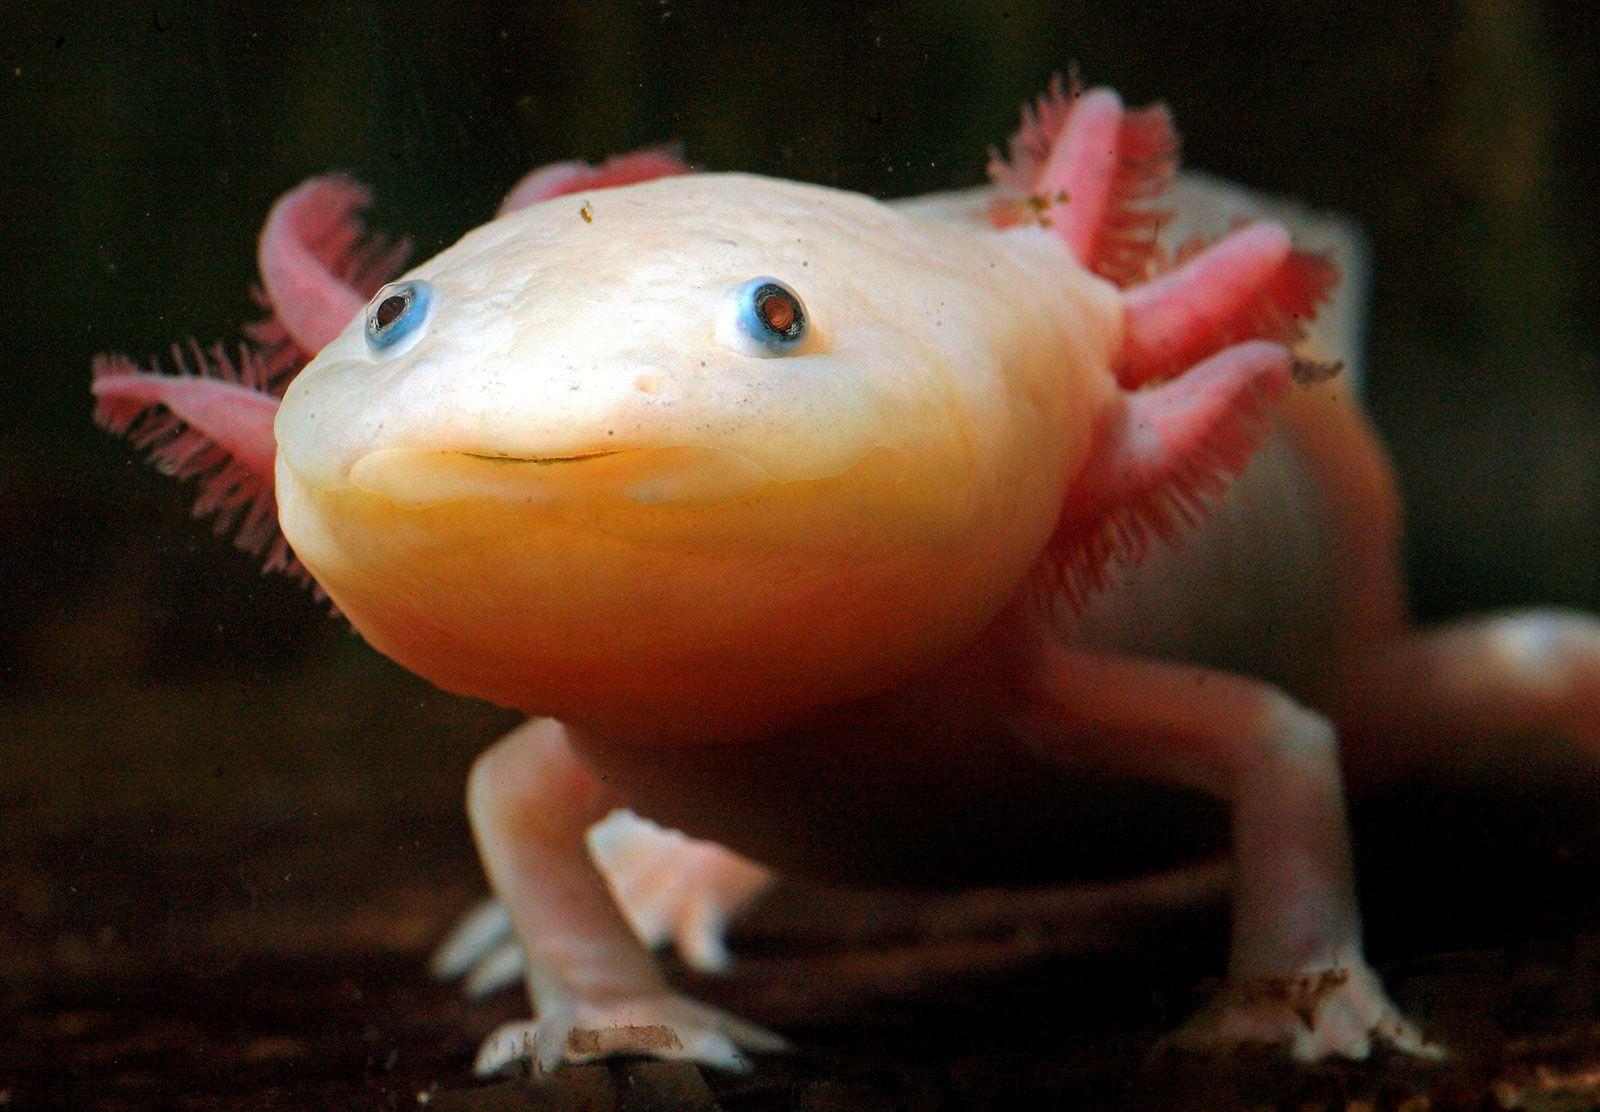 The axolotl, a fully aquatic salamander that spends its whole life